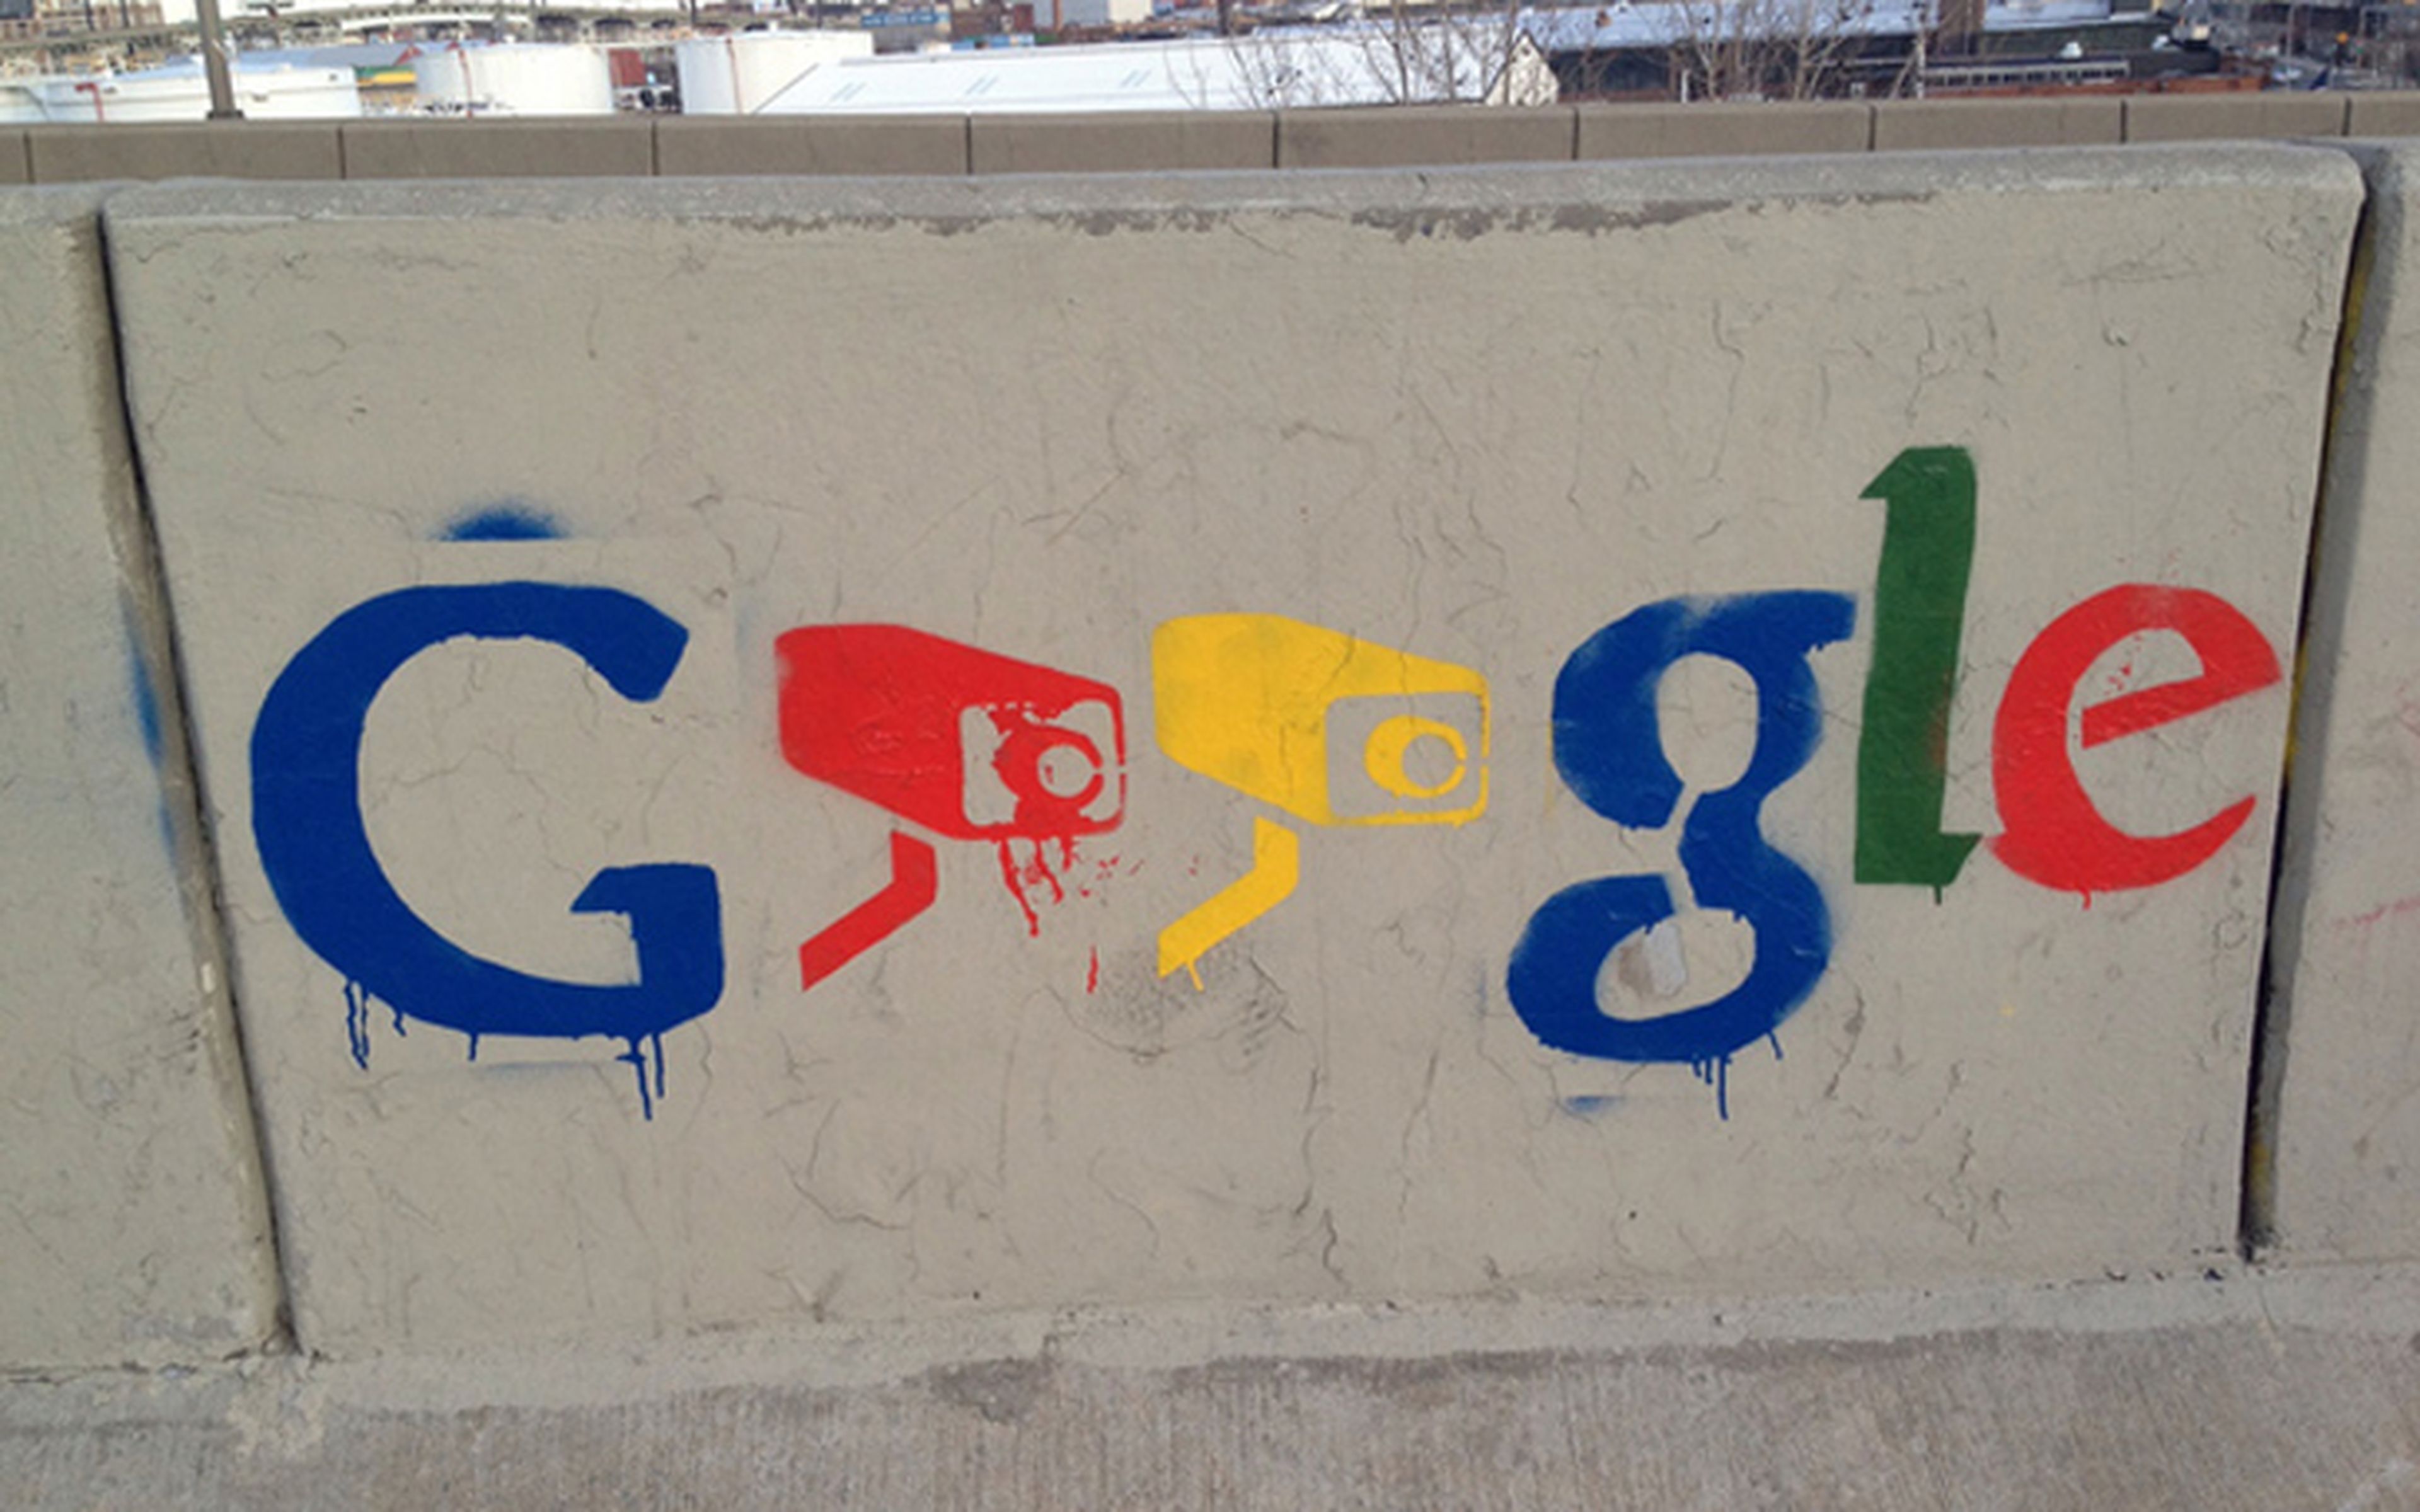 Google espionaje gobiernos